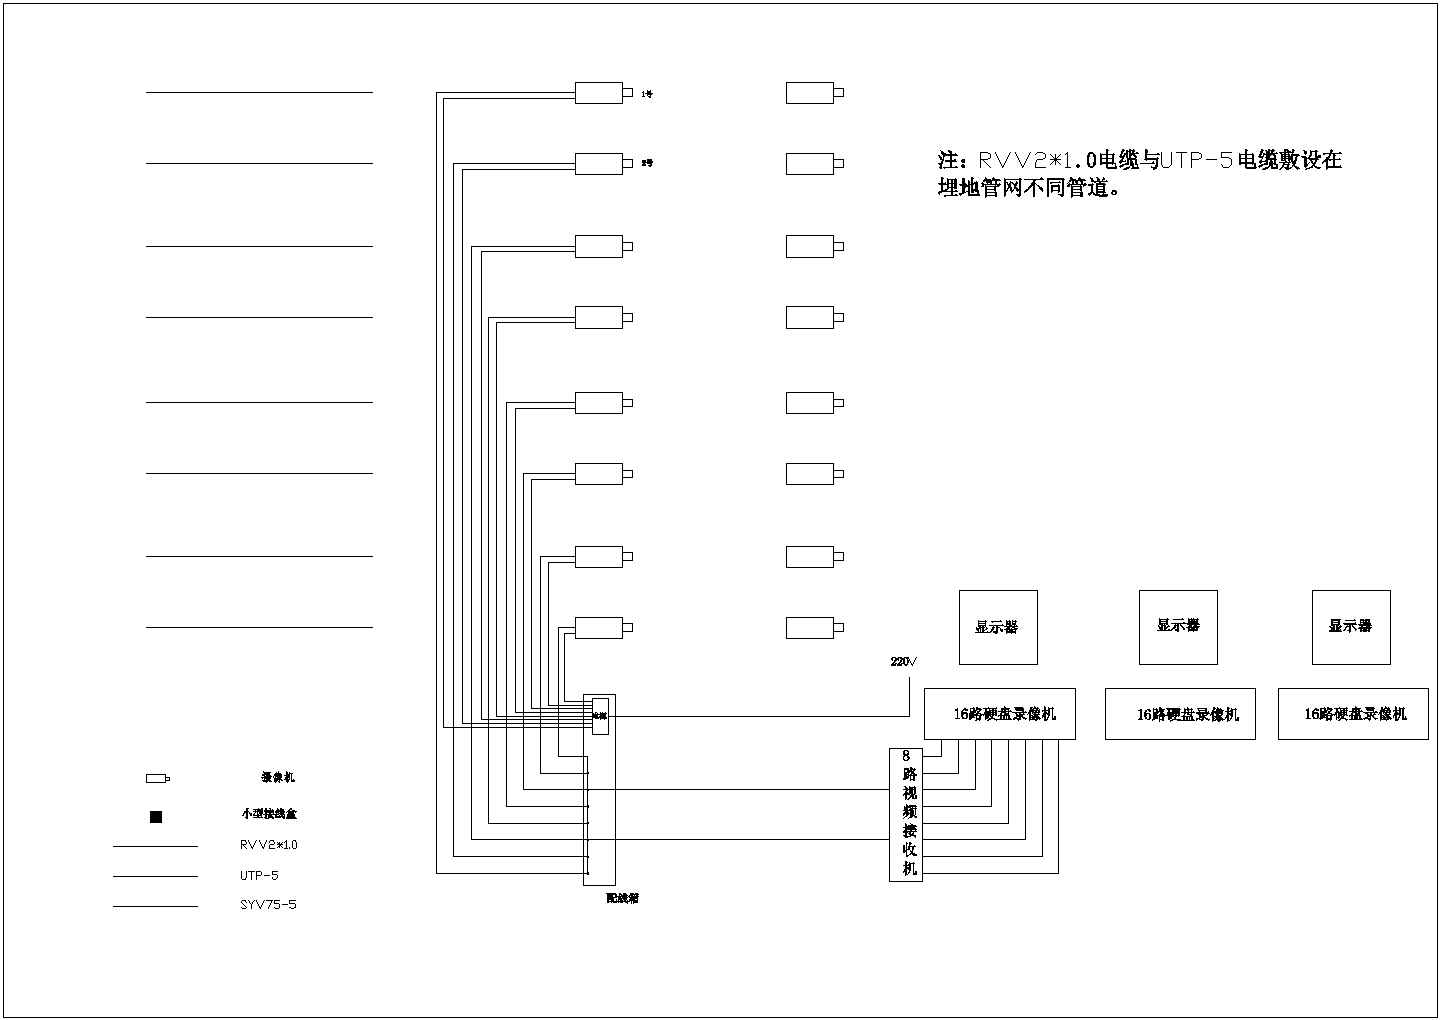 设计安装安徽省芜湖市某智能化小区系统图